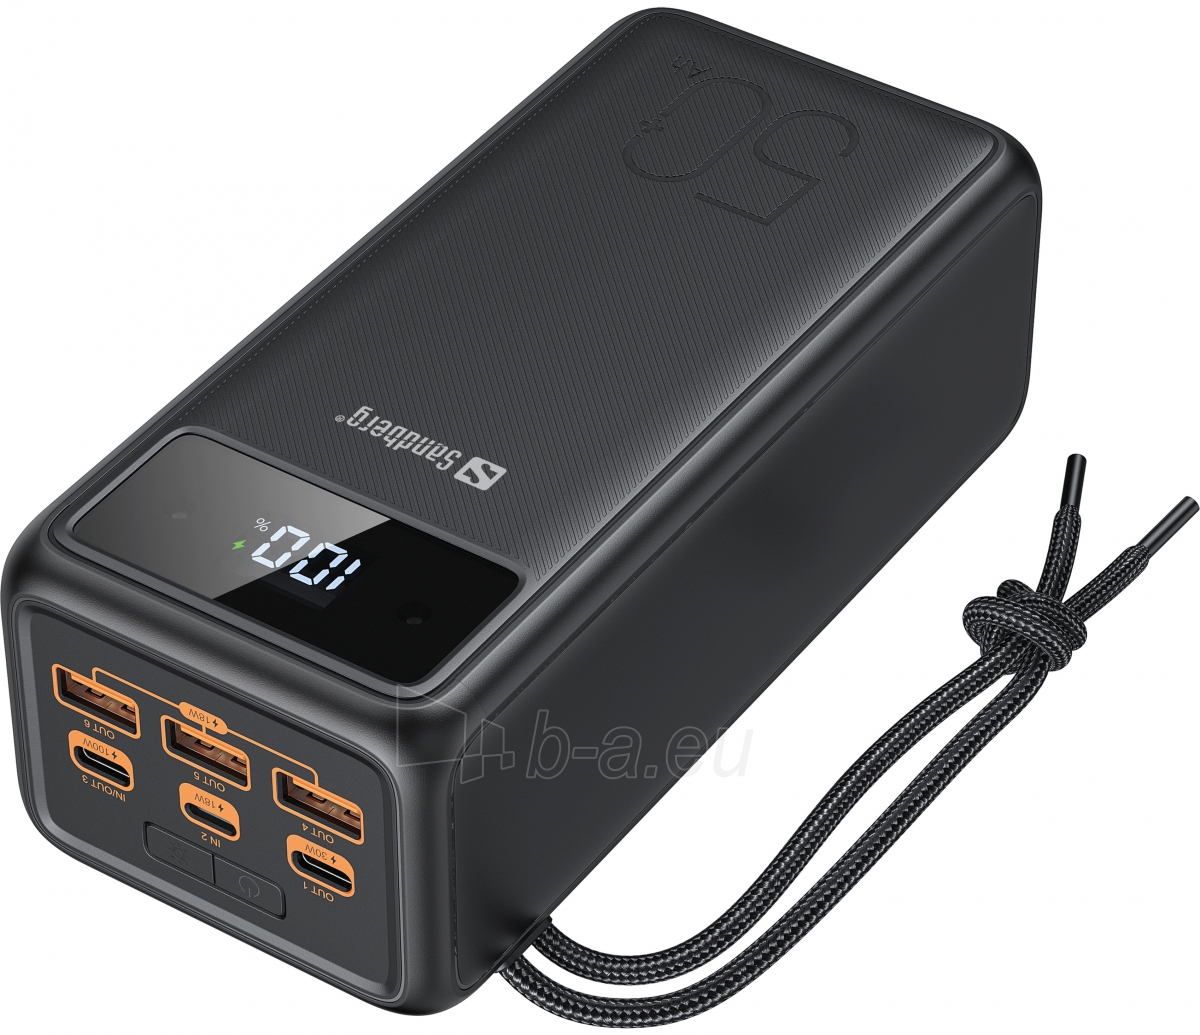 Išorinė baterija Sandberg 420-75 Powerbank USB-C PD 130W 50000 paveikslėlis 1 iš 7